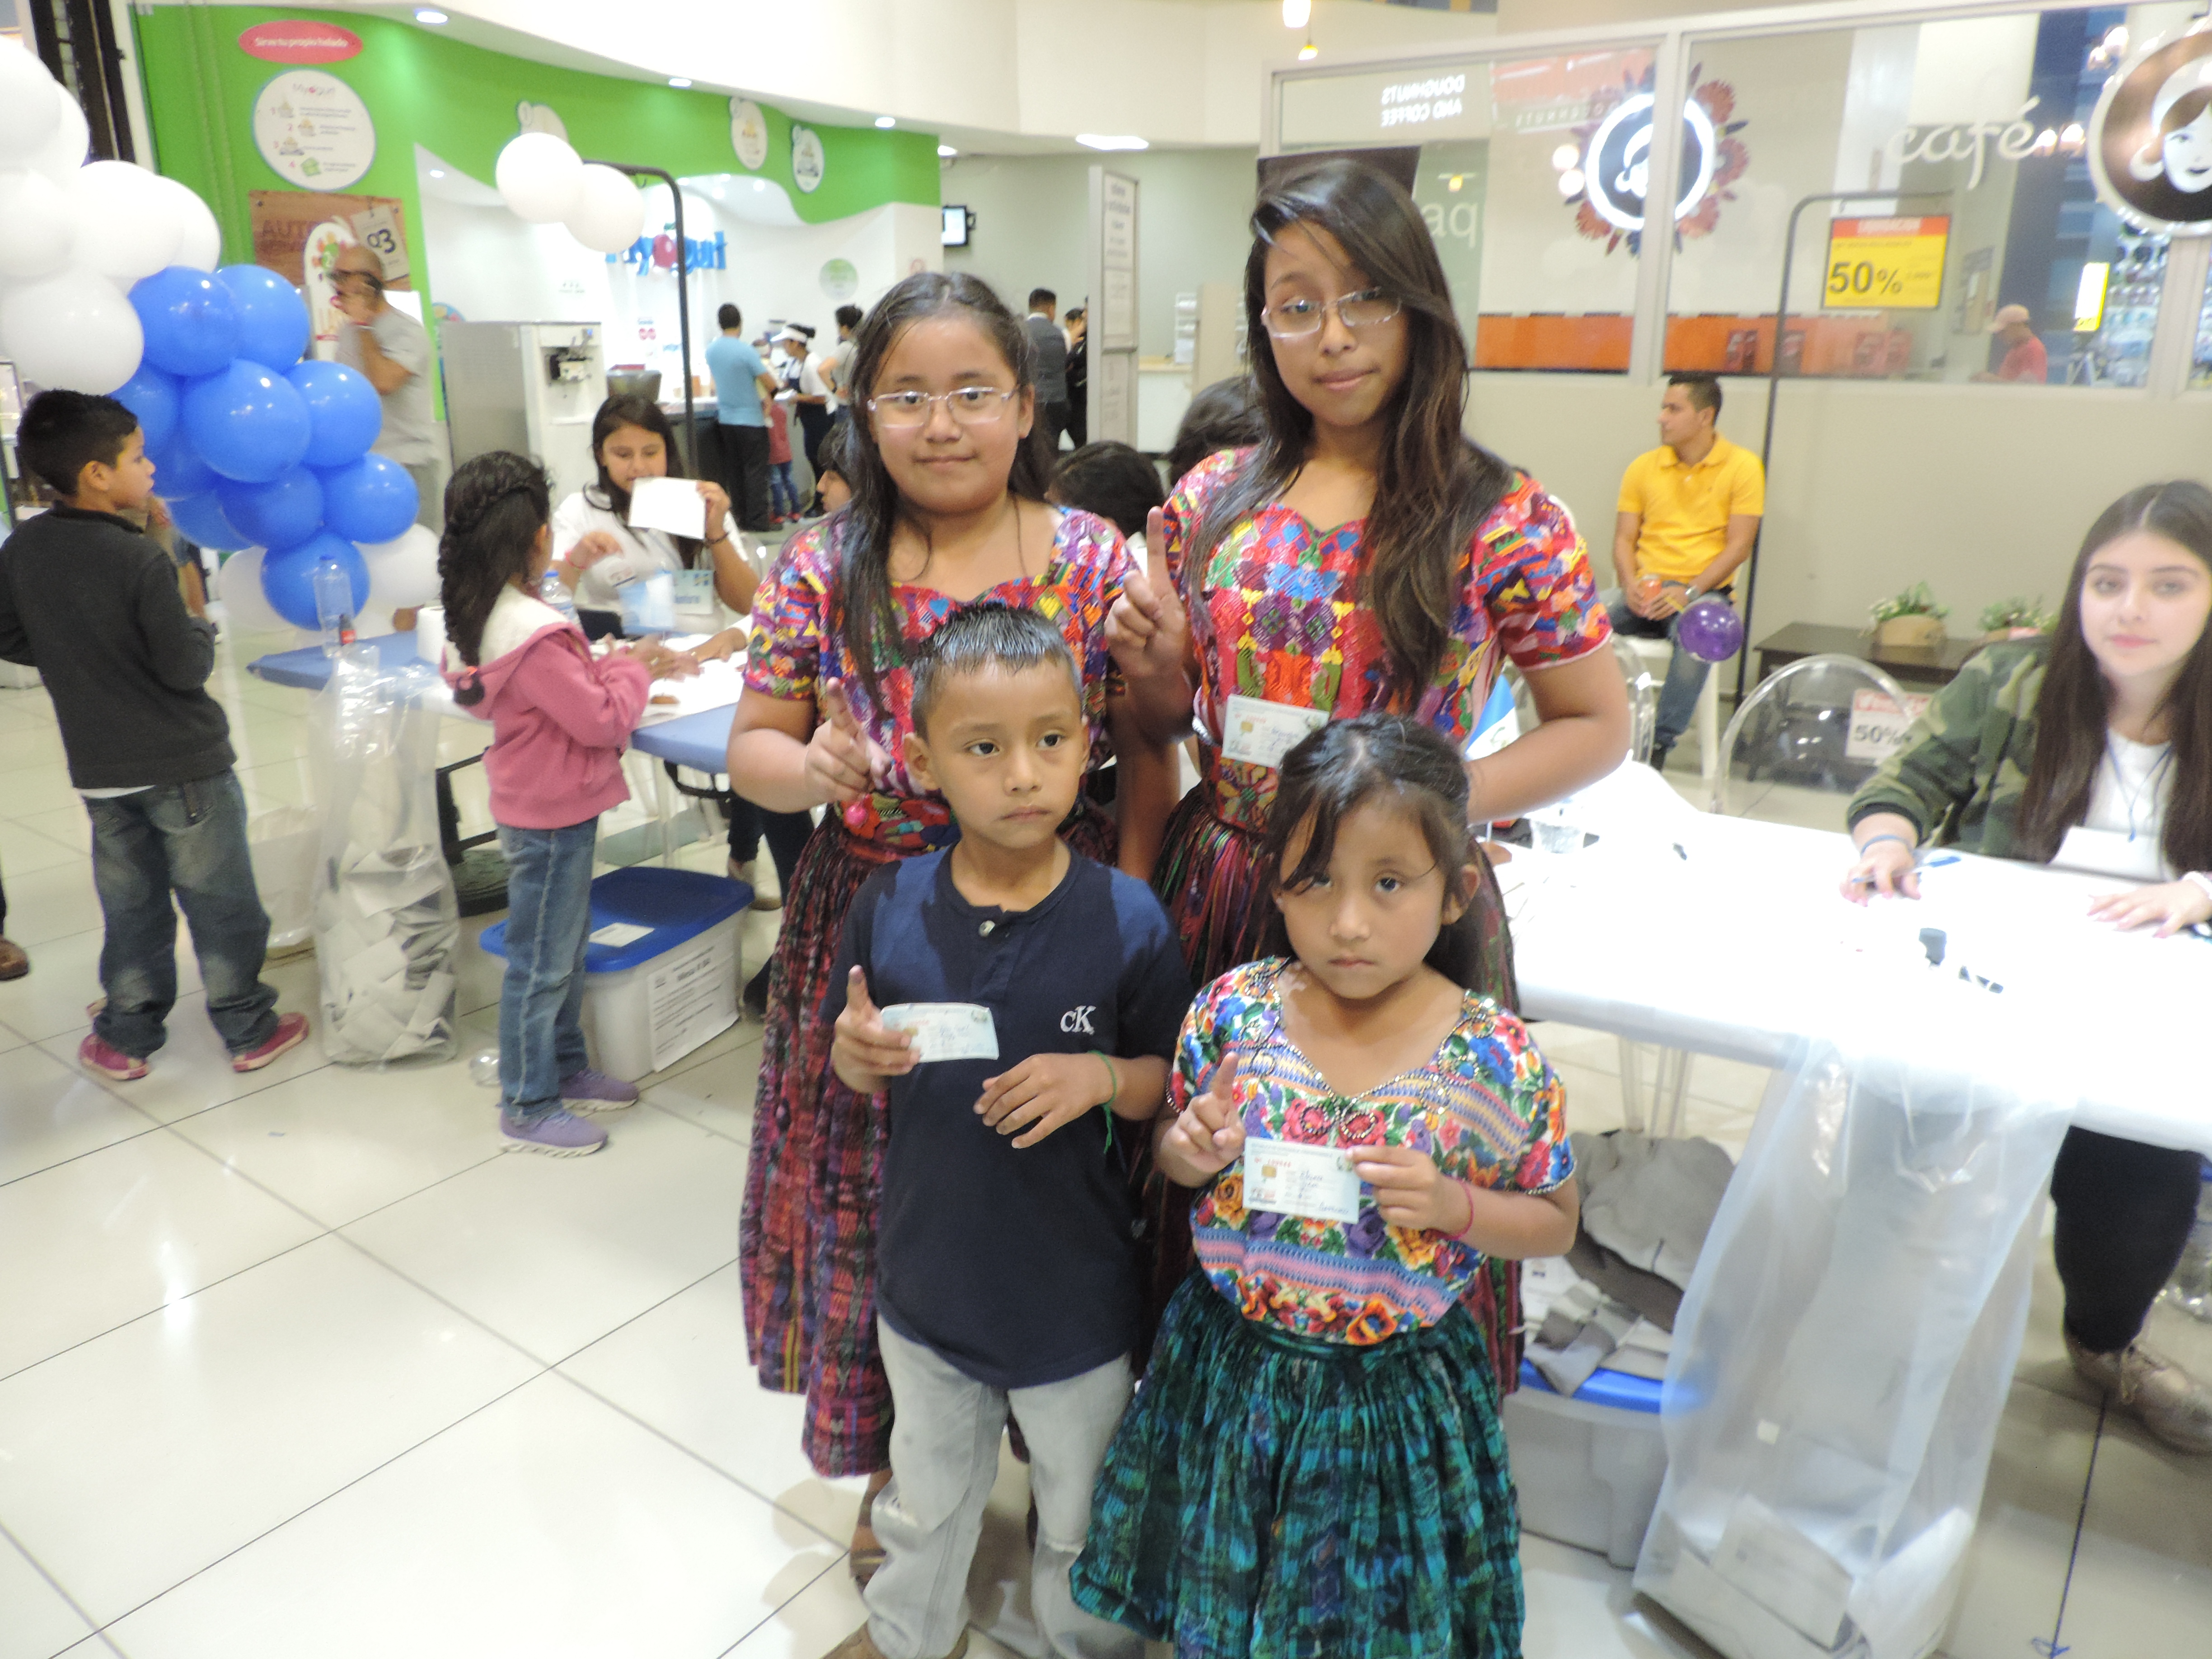 Los hermanos Xuyá  llegaron de Chinautla a emitir su voto en Cemaco del Centro Comercial Portales.  (Foto Prensa Libre: Ingrid Reyes)